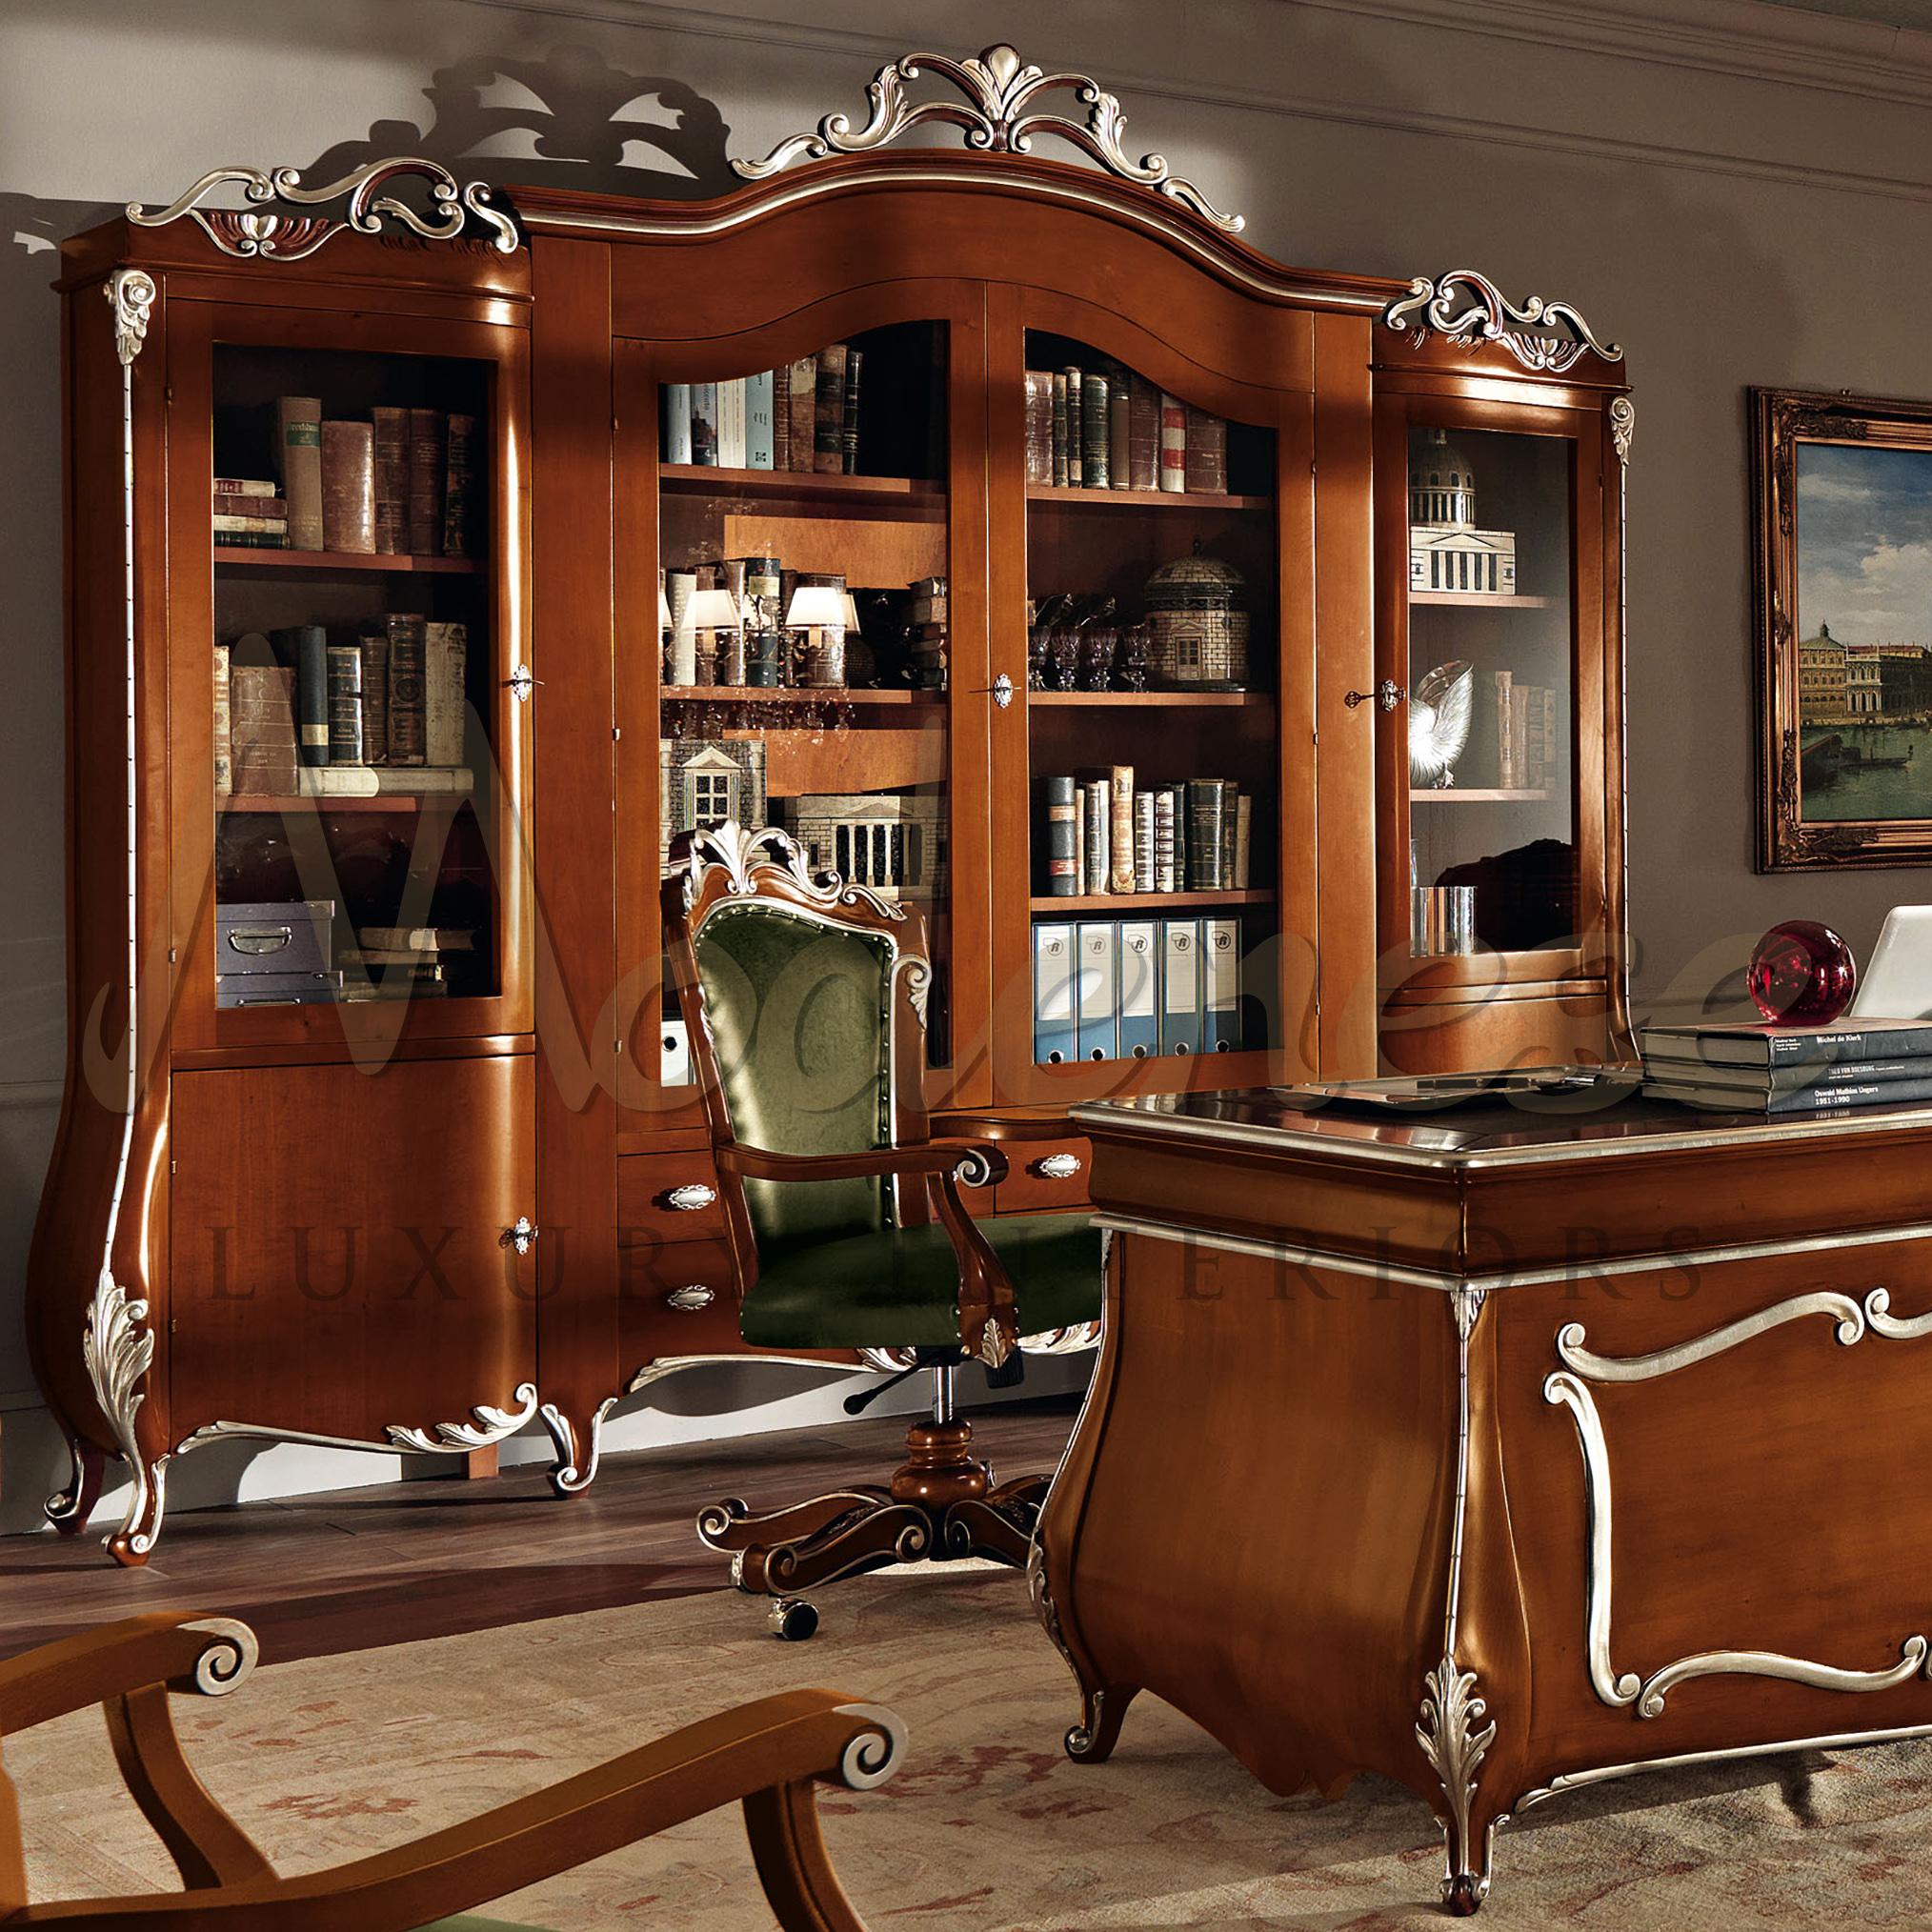 Modenese Gastone Interiors kann der perfekte Partner für Ihr exklusives Einrichtungsprojekt für das Präsidialbüro sein. Dieses hochwertige viertürige Bücherregal aus Massivholz mit natürlicher Oberfläche und handverzierten Blattsilberdetails ist